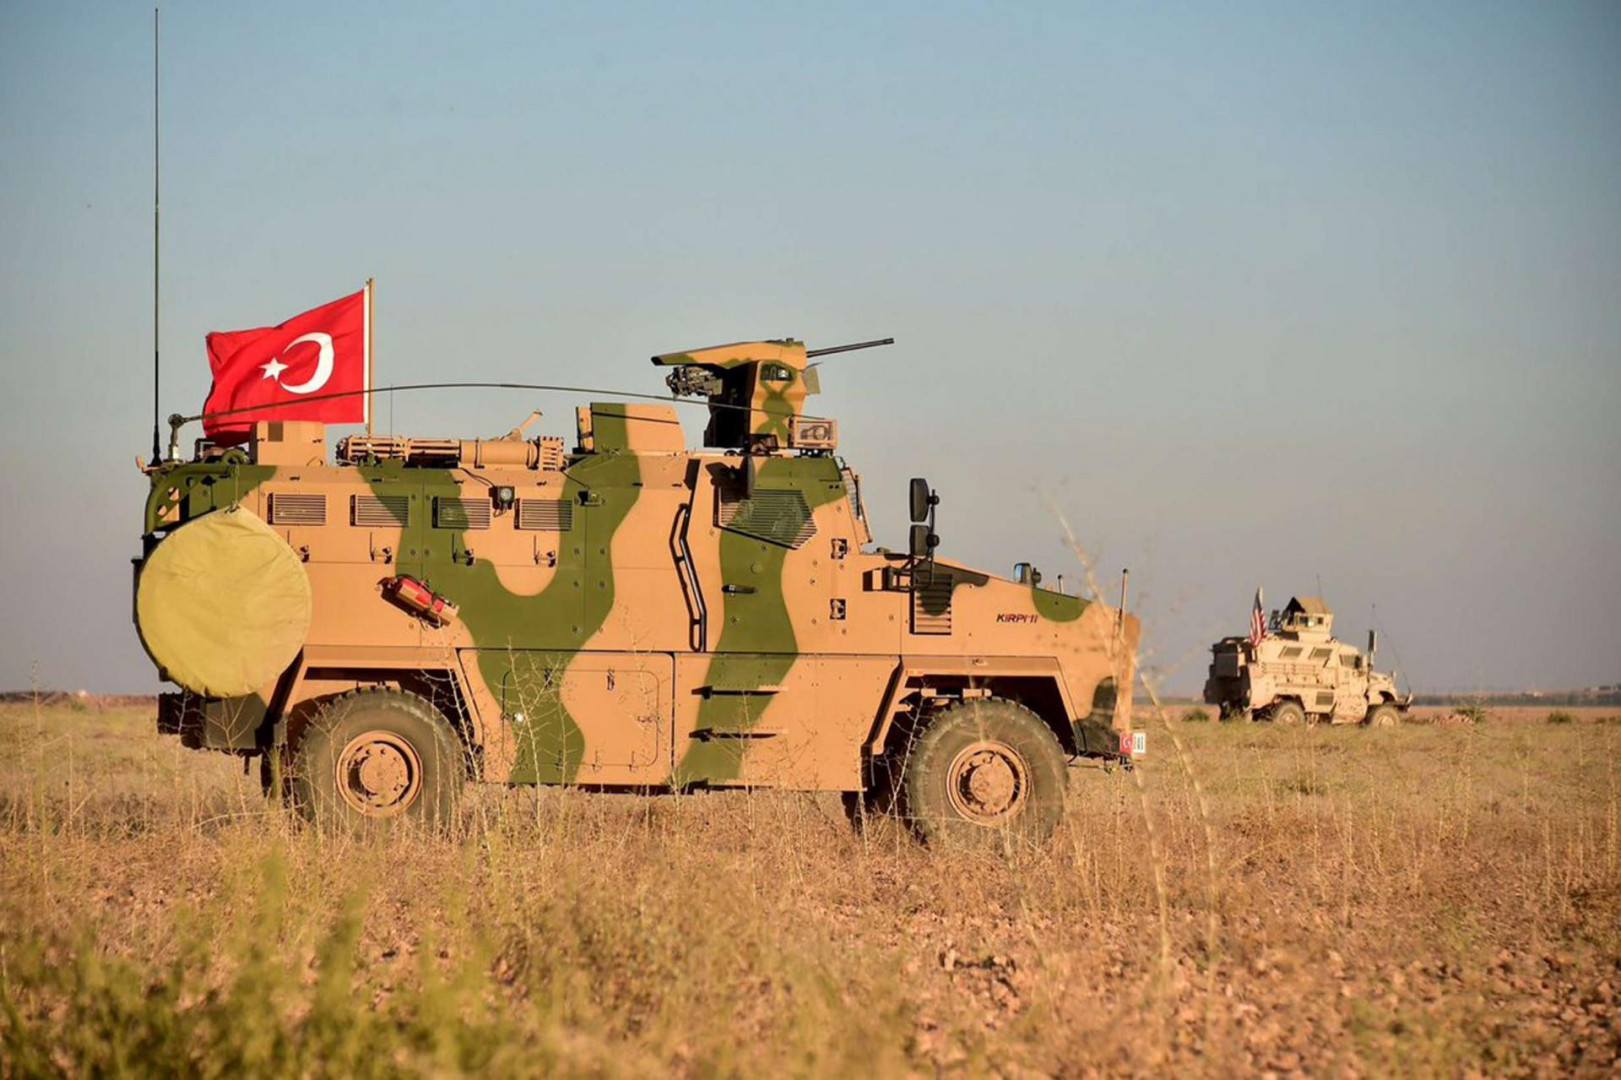 Turkish forces neutralize 6 PKK militants in Kurdistan region of Iraq